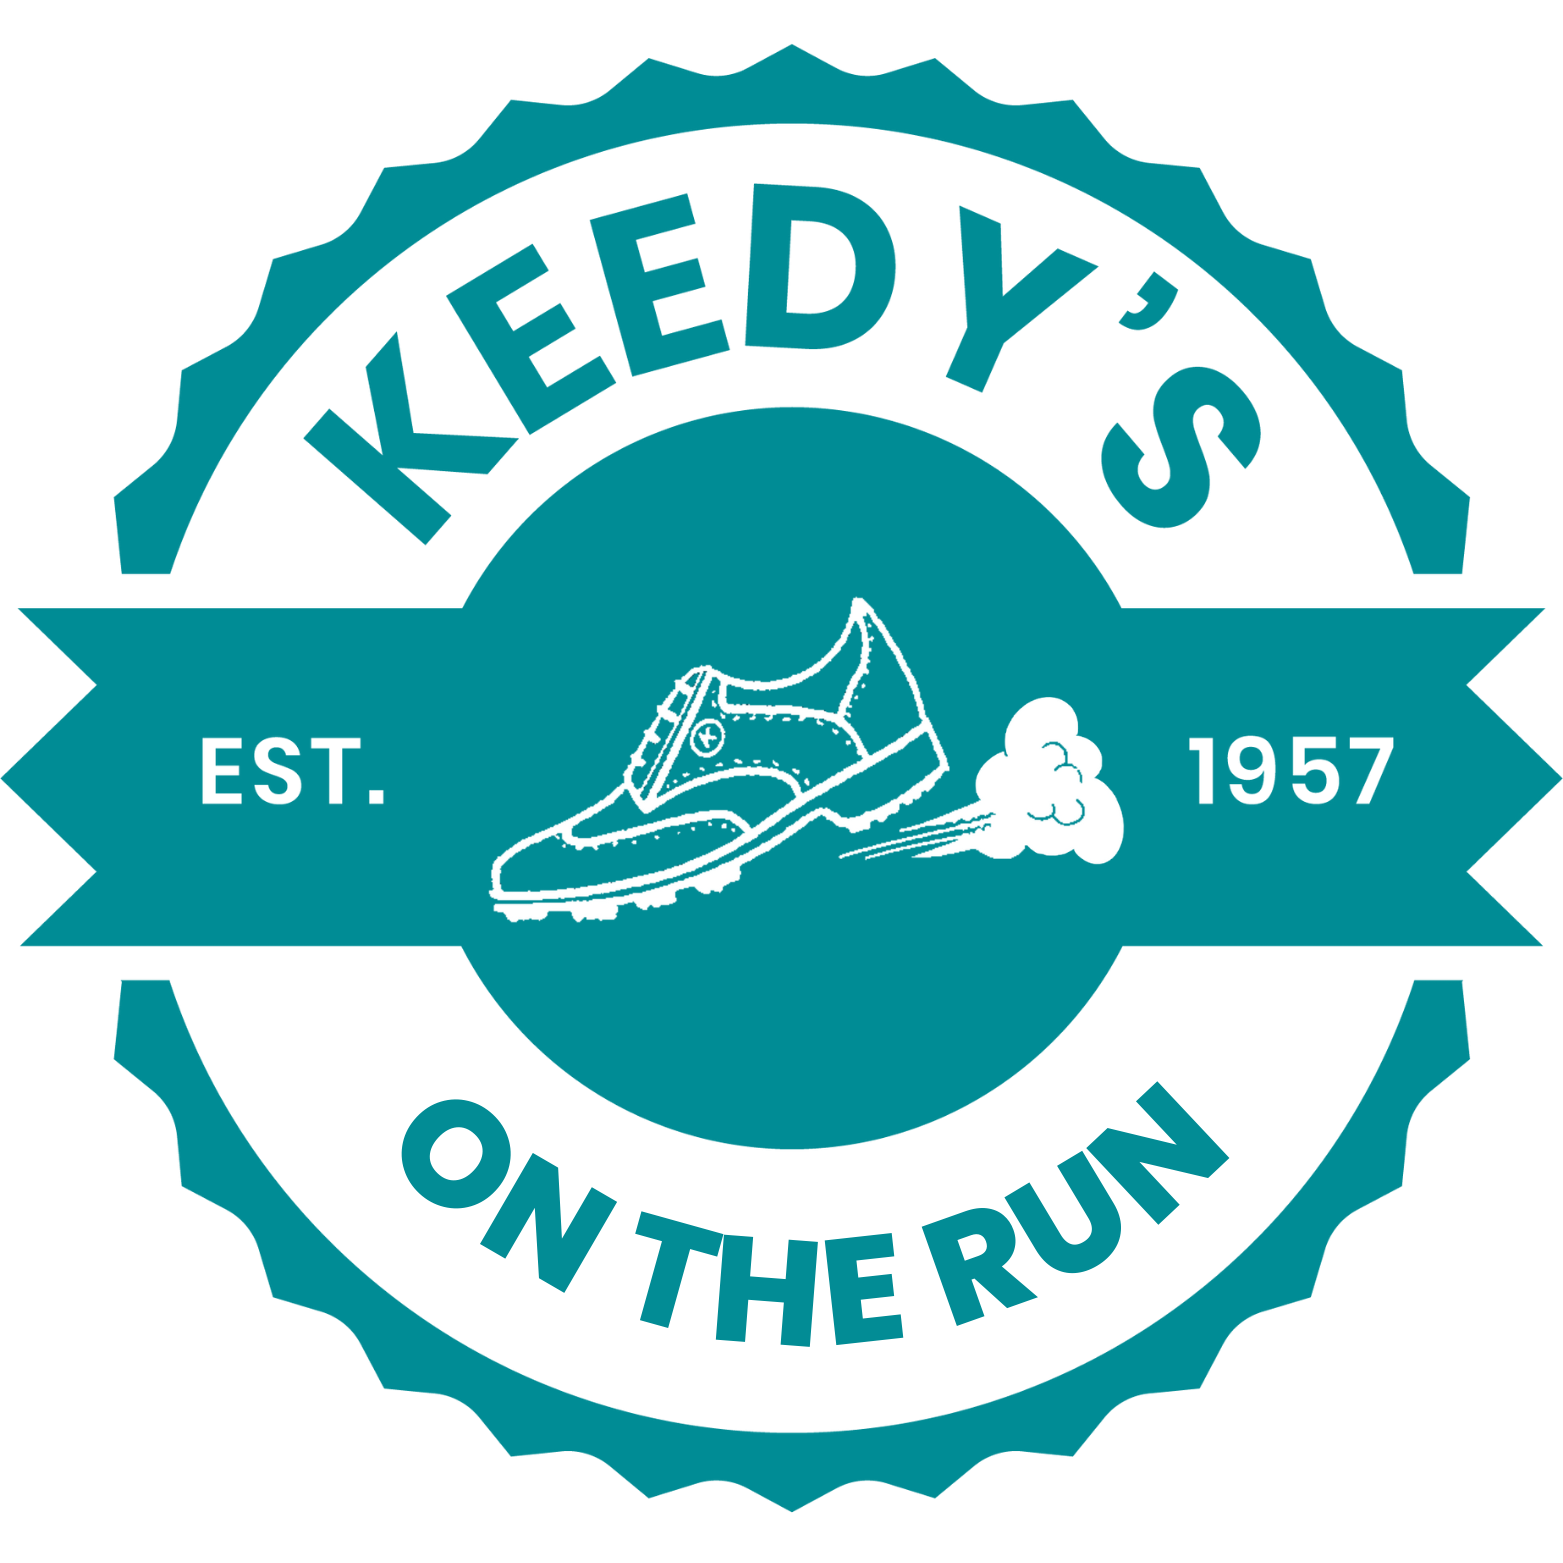 Keedy's On The Run OTR